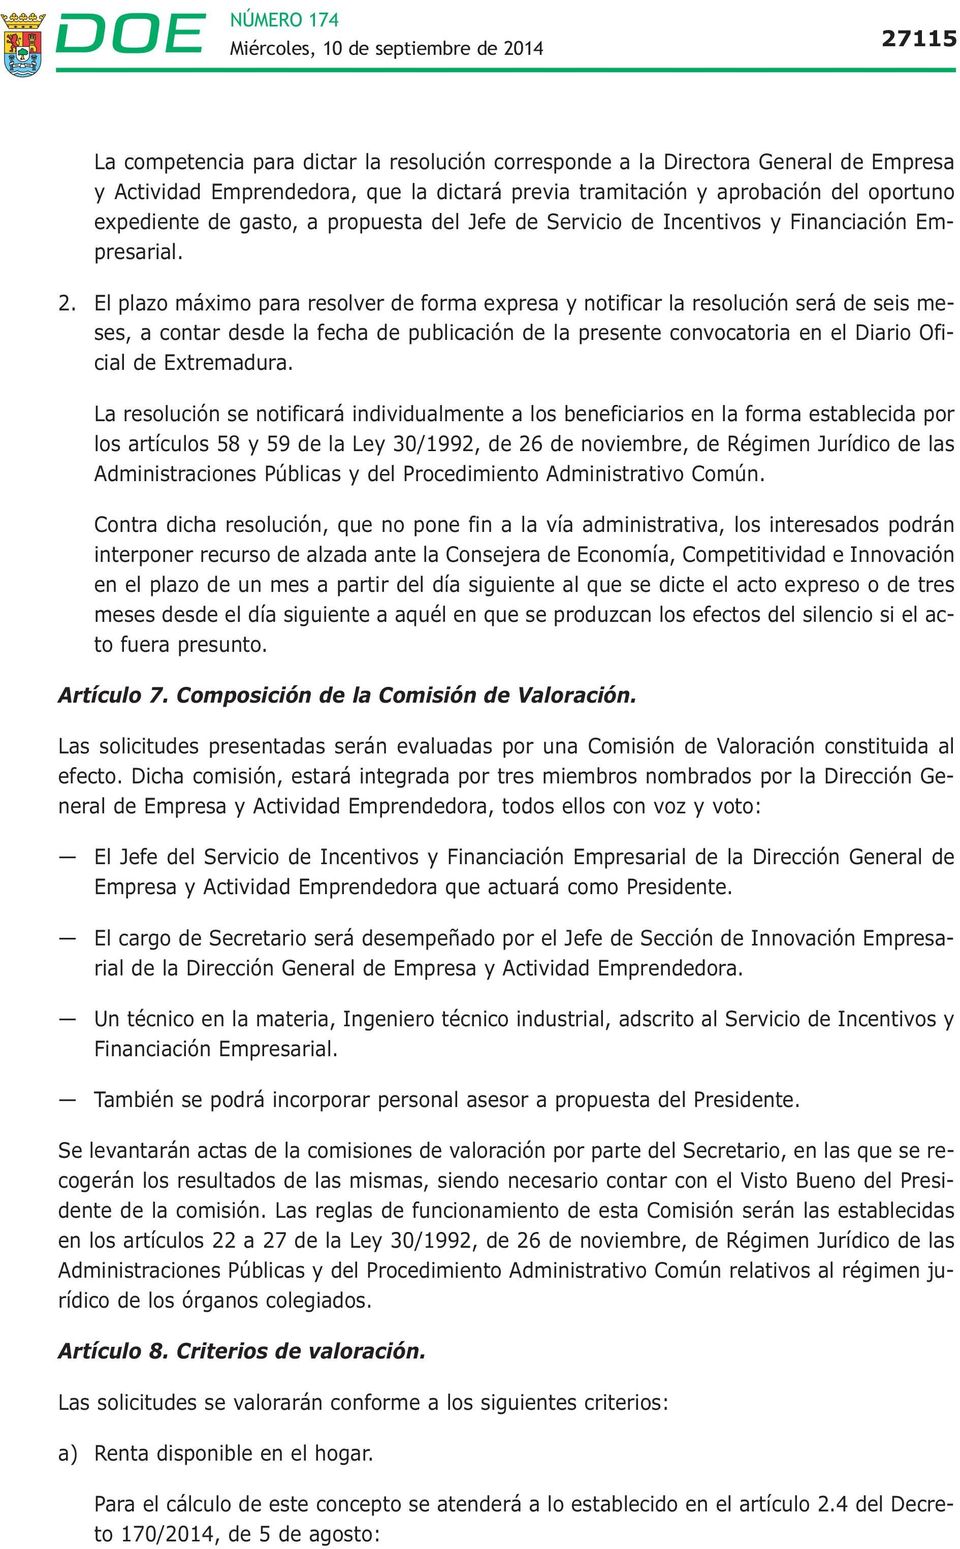 El plazo máximo para resolver de forma expresa y notificar la resolución será de seis meses, a contar desde la fecha de publicación de la presente convocatoria en el Diario Oficial de Extremadura.